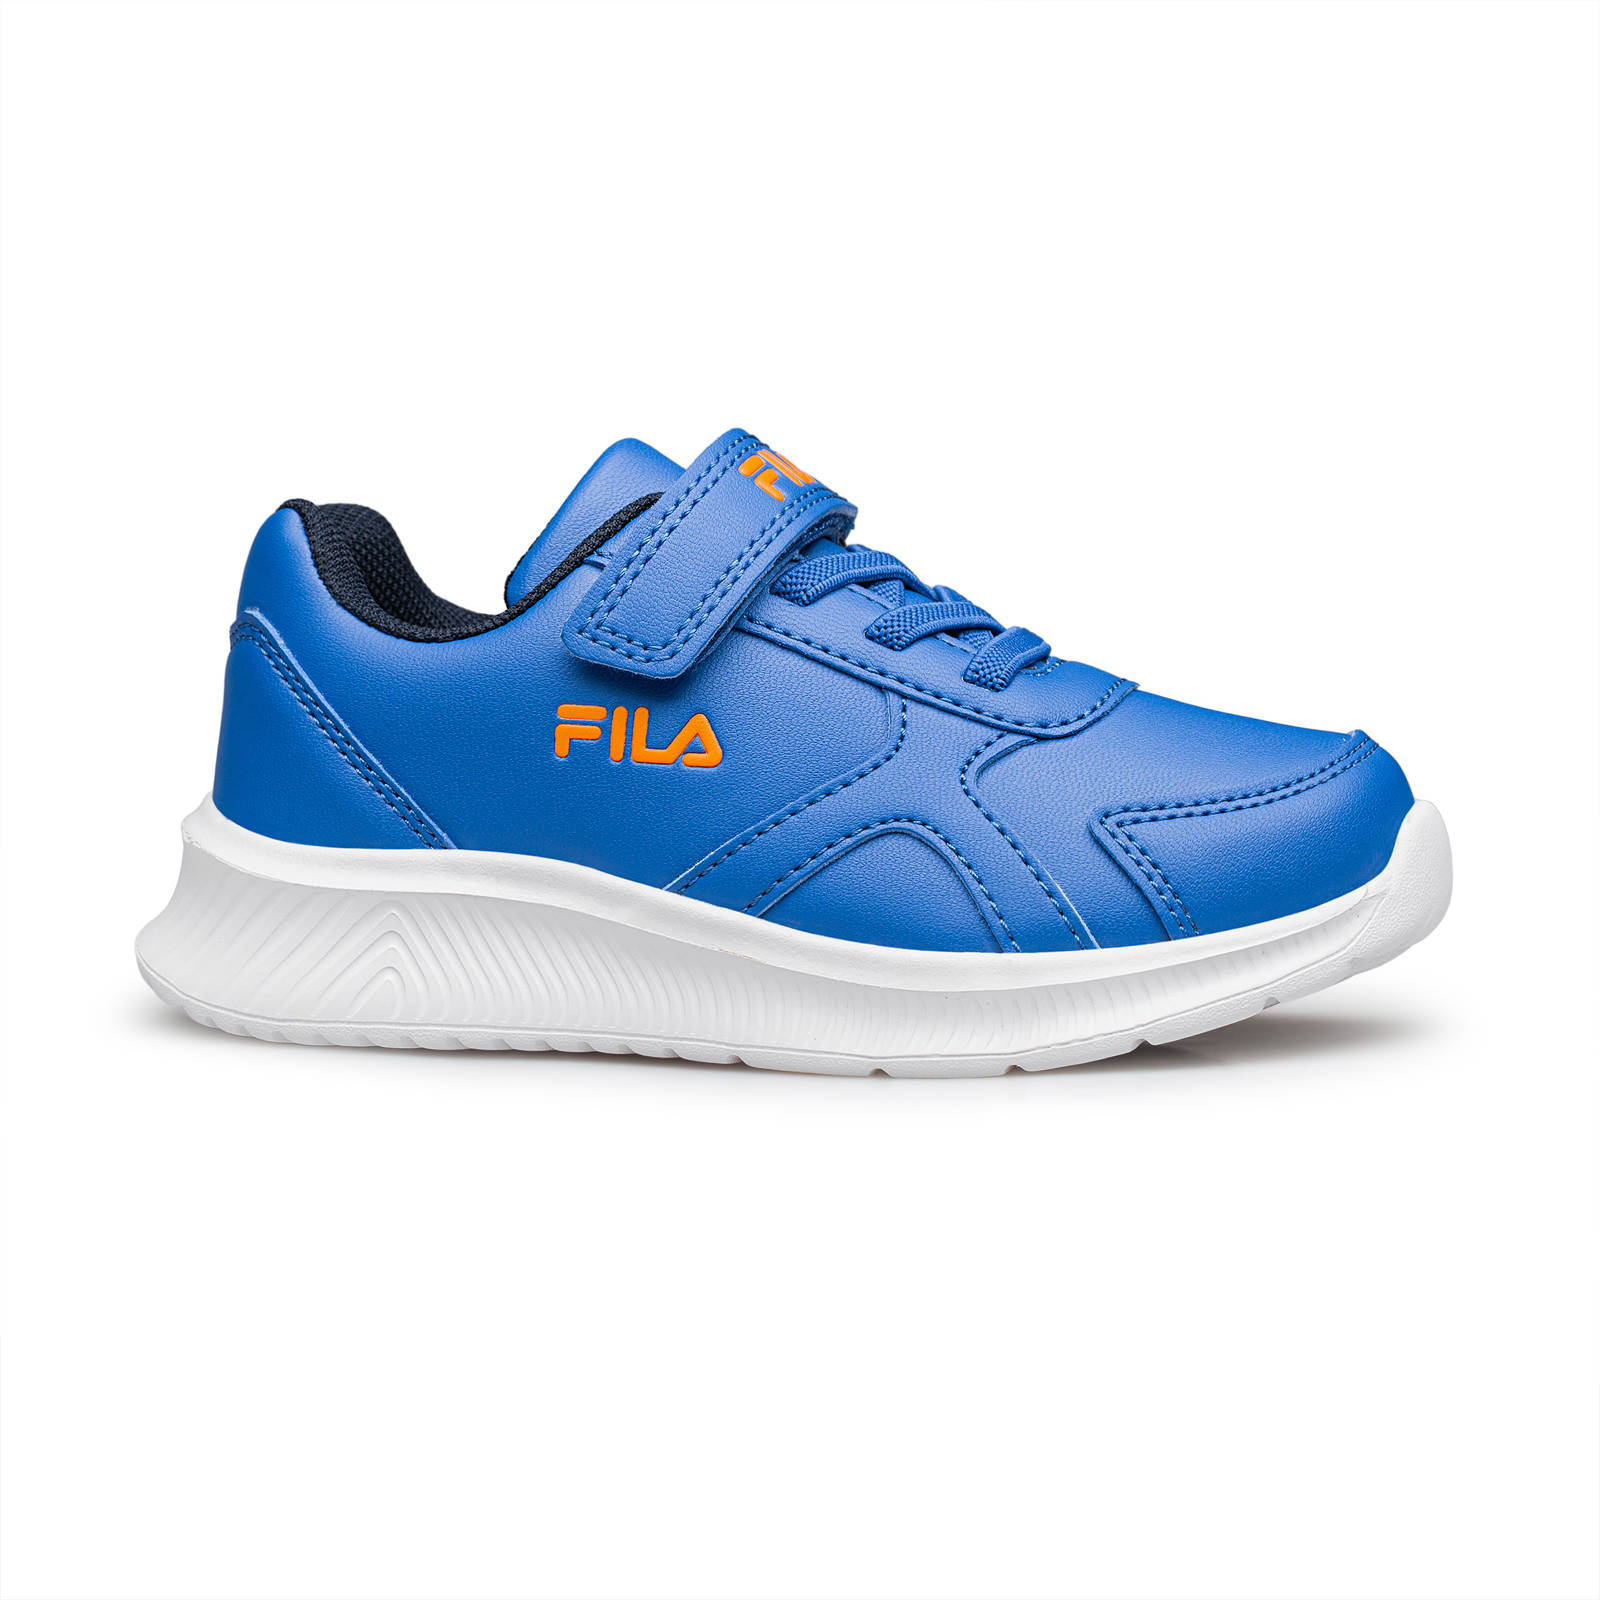 Fila - BRETT 4 V FOOTWEAR - LIGHT ROYAL BLUE DEEP ORANGE